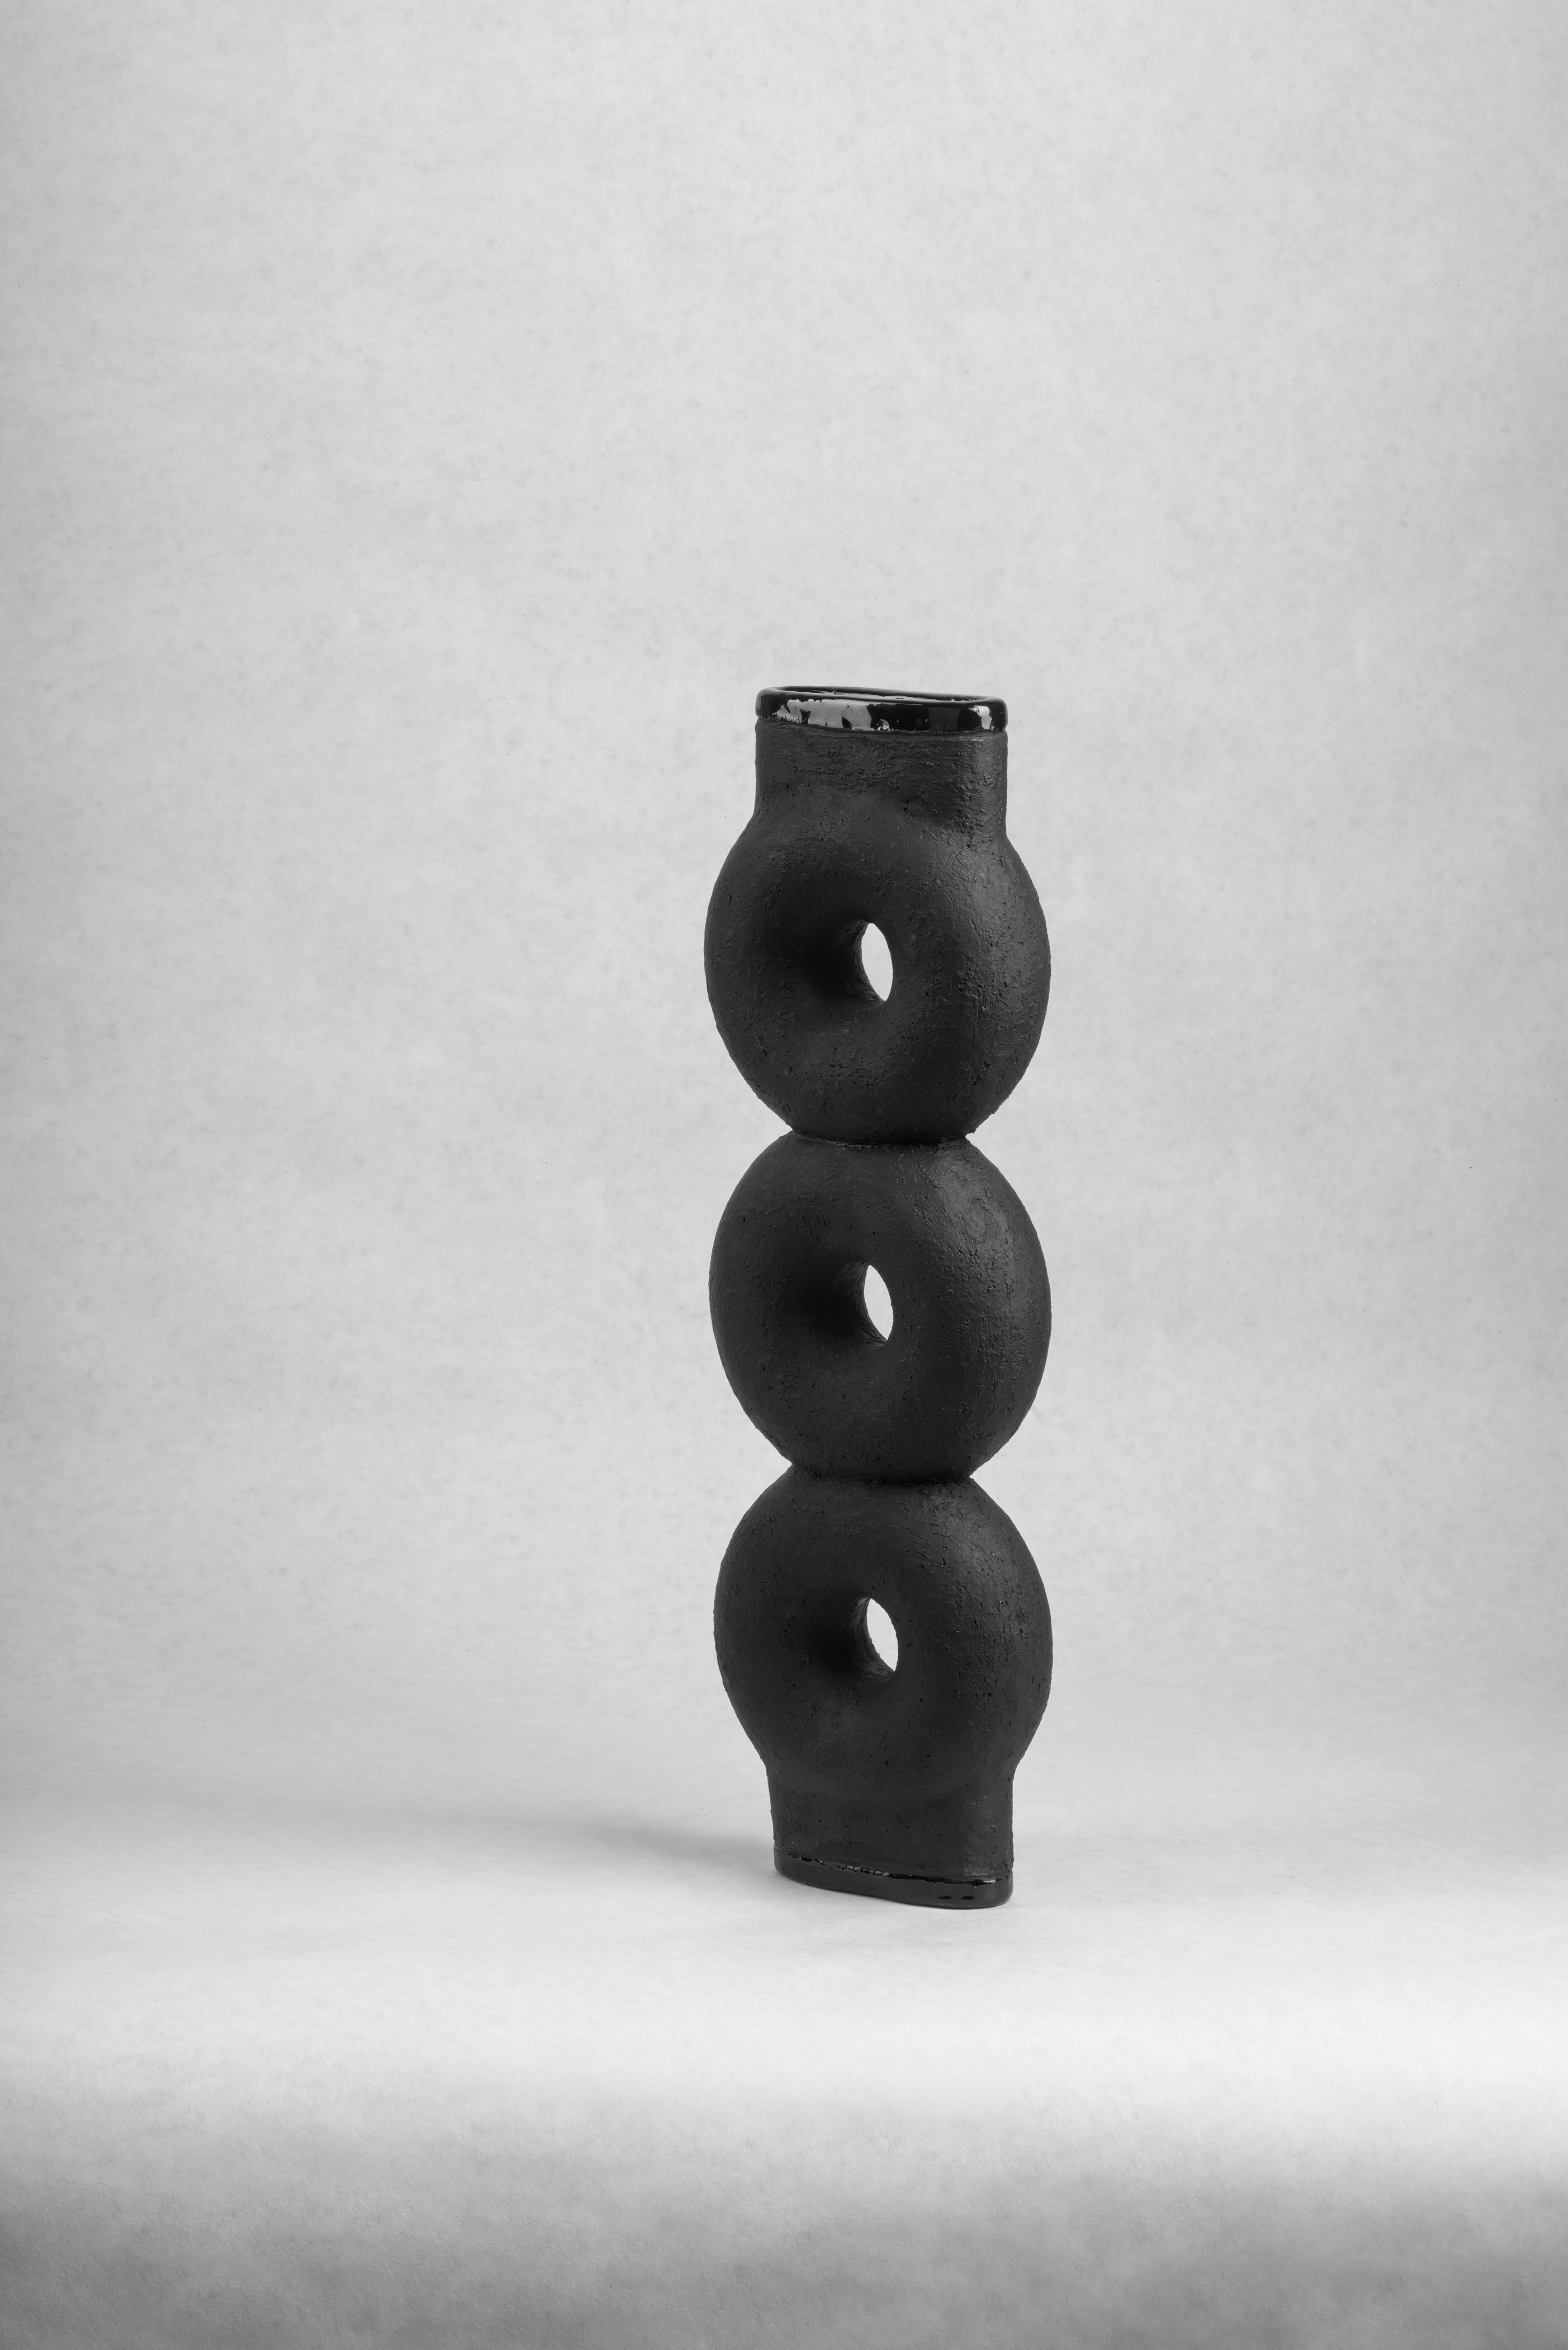 Geformte Keramikvase von FAINA
Entwurf: Victoriya Yakusha
MATERIAL: MATERIAL: Ton/Keramik
Abmessungen: 14 x 5 x H 43,5 cm


Die Vase ist Teil einer Serie von 5 Vasen, der Satz von Vasen besteht aus:

1. Vase auf drei Beinen Höhe 500 x Breite 200 x